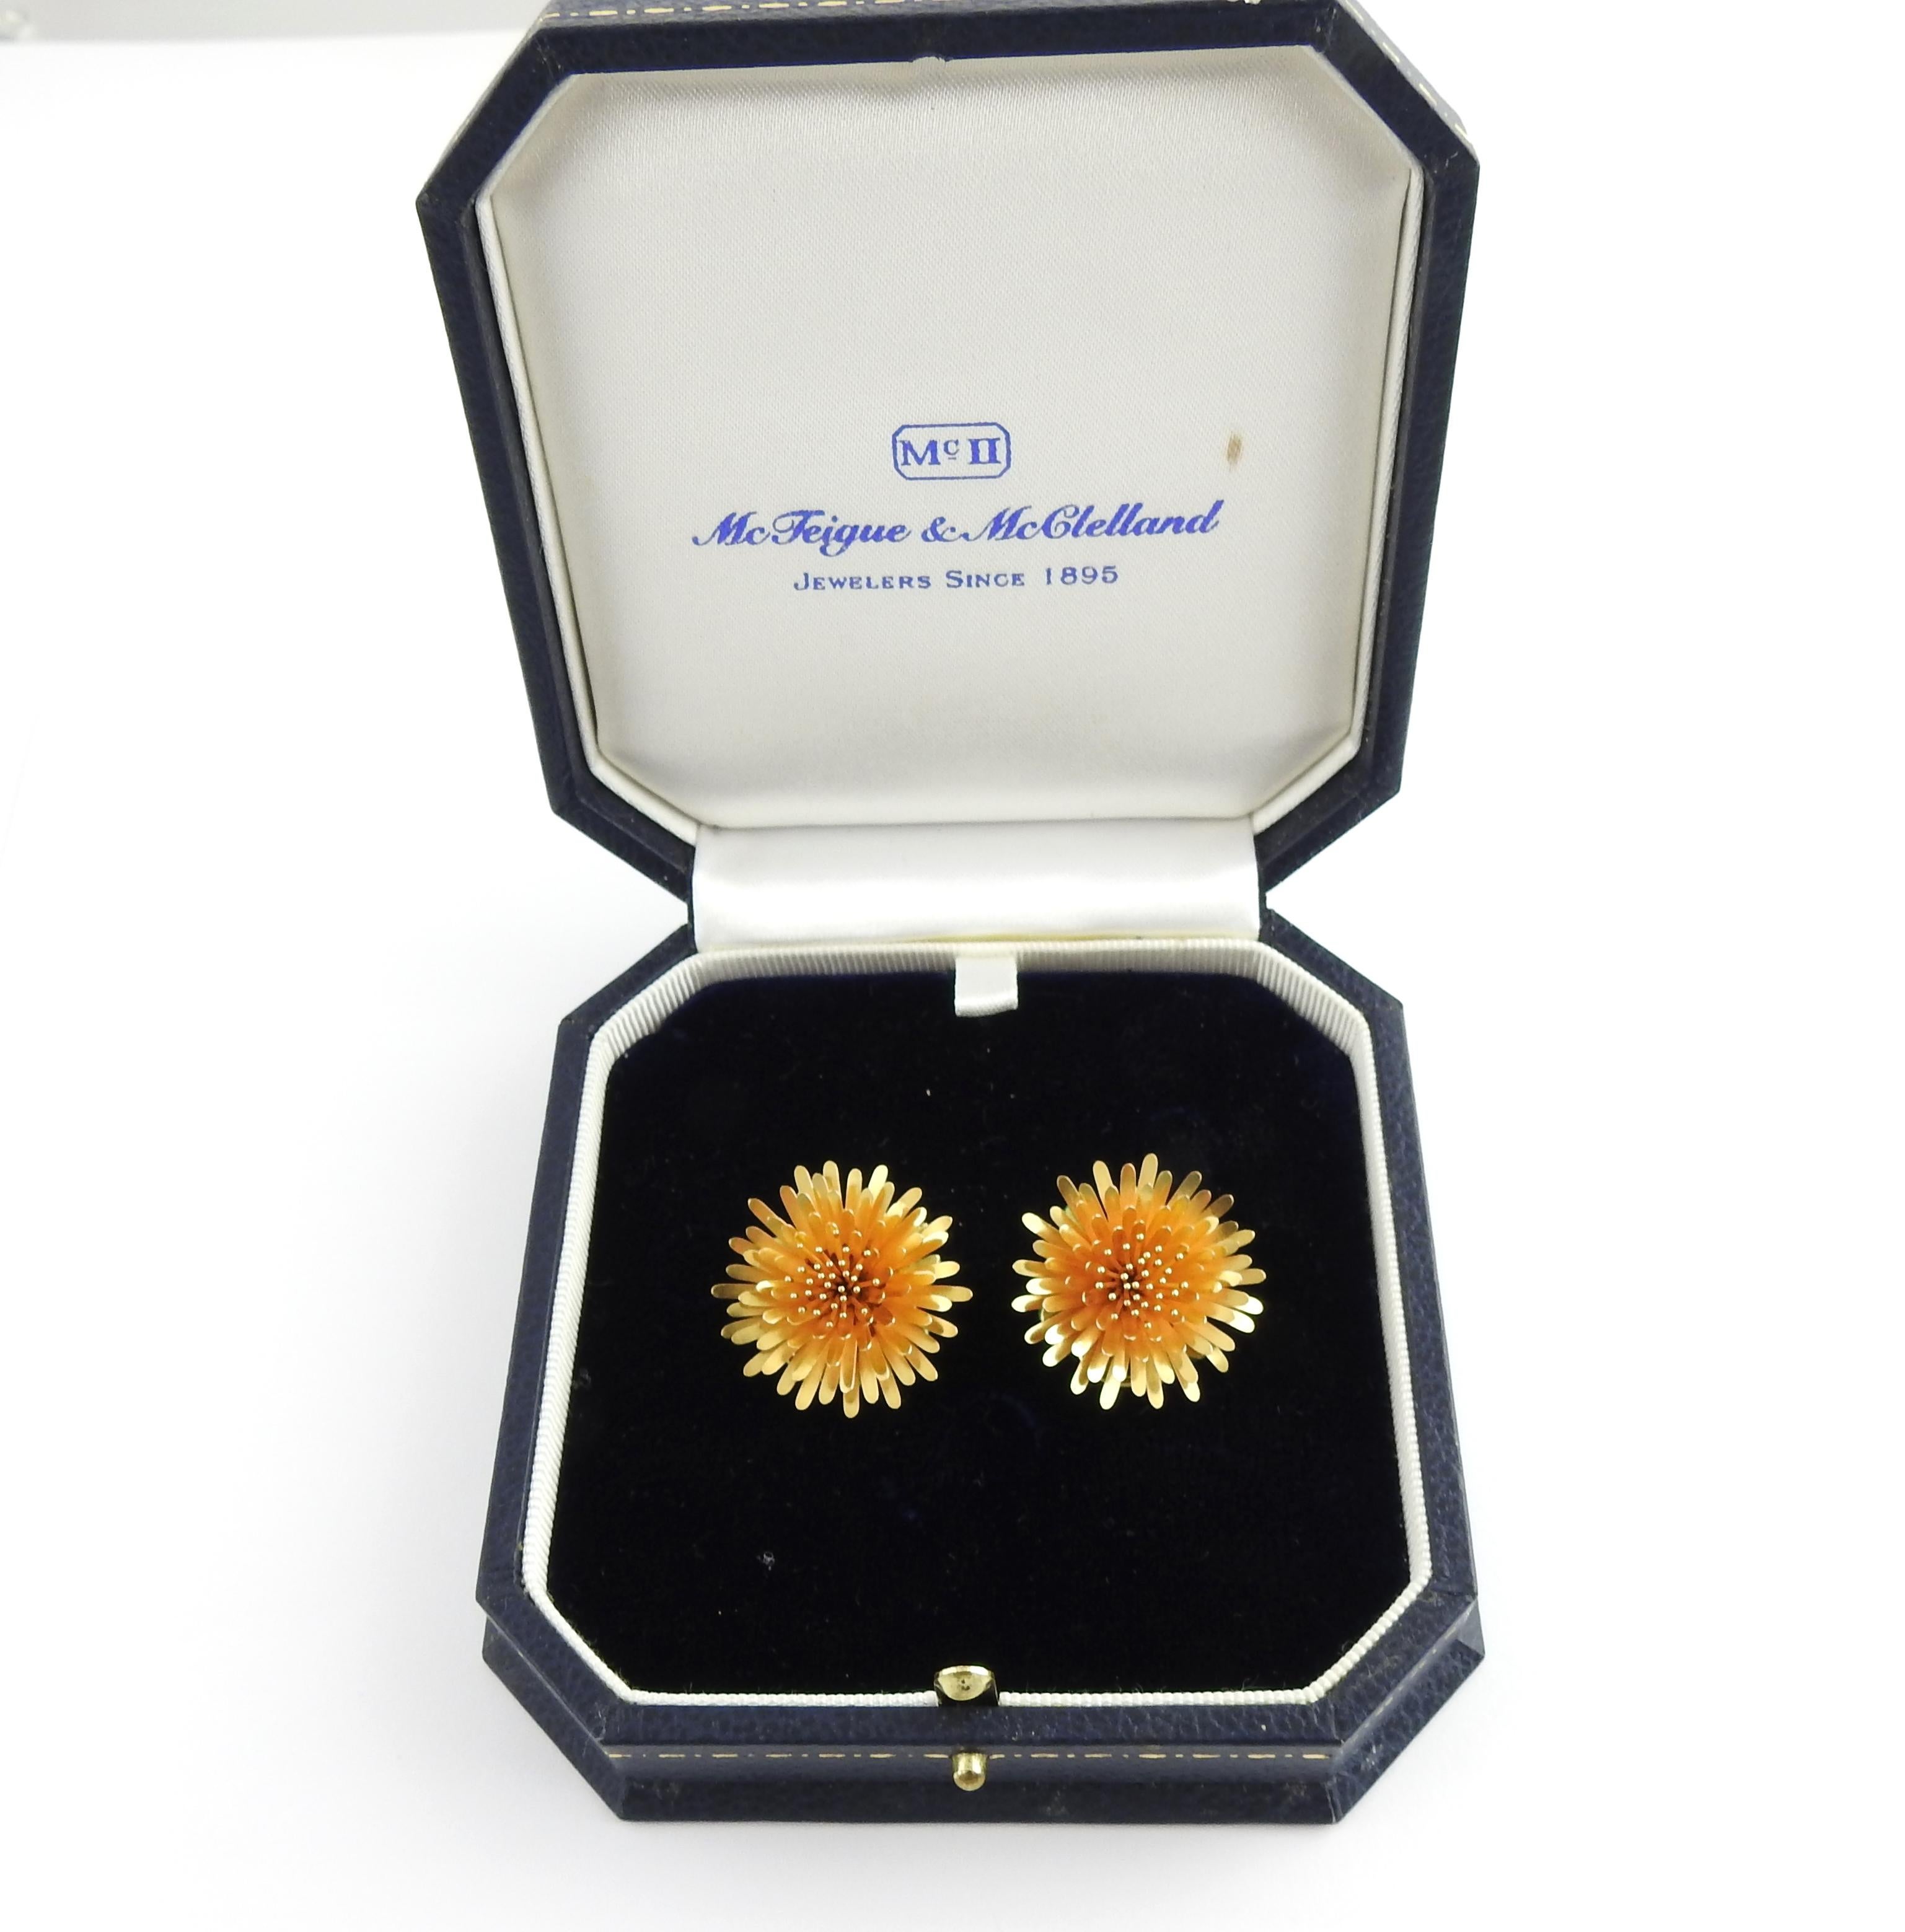 McTeigue & McClelland 18 Karat Gold Dandelion Earrings with Green Enamel Back 4